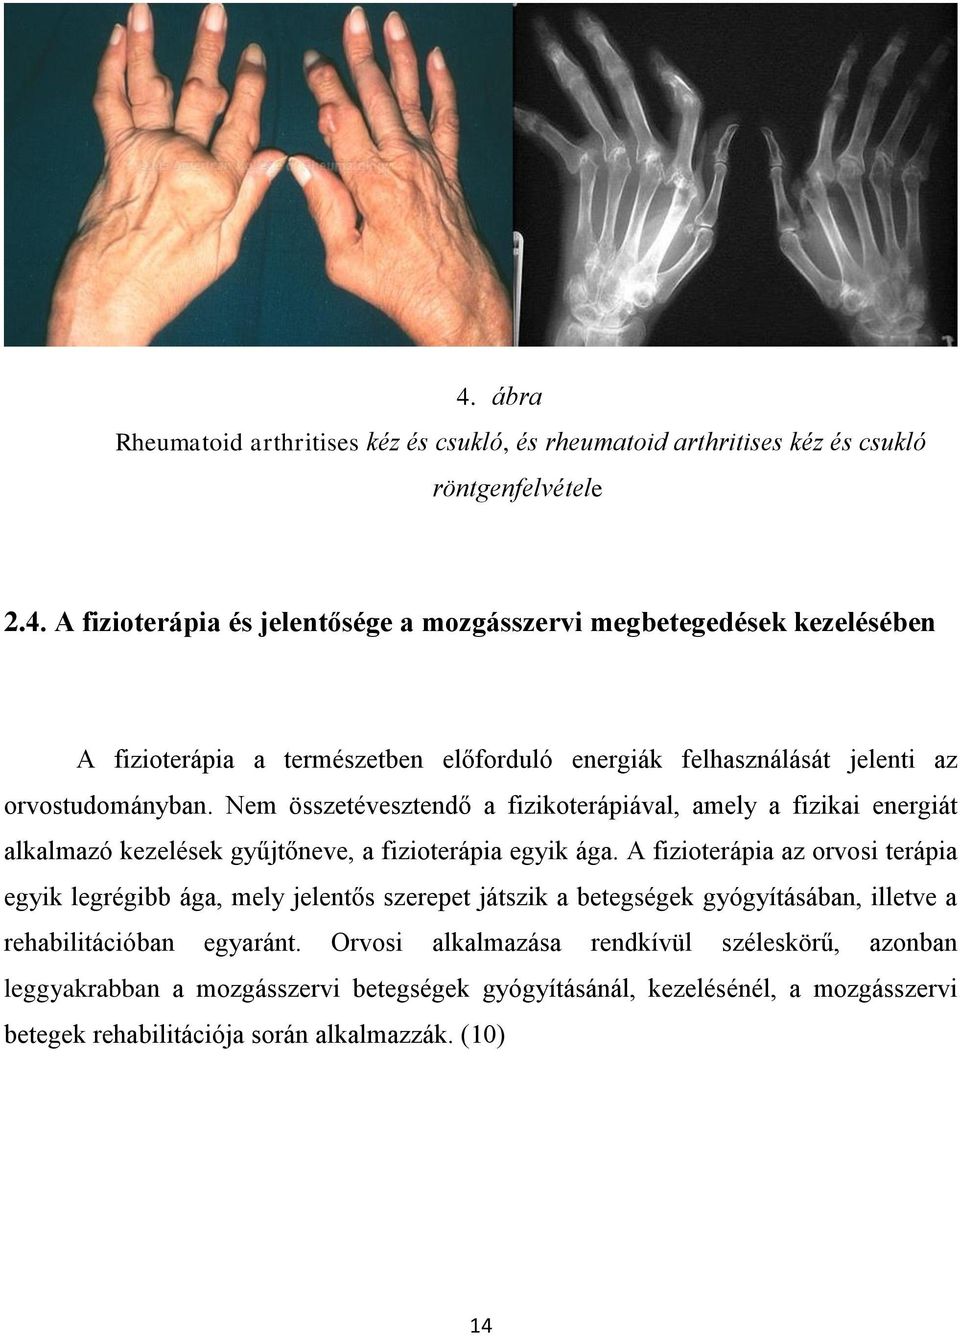 fizioterápia a kéz arthrosisának kezelésében)